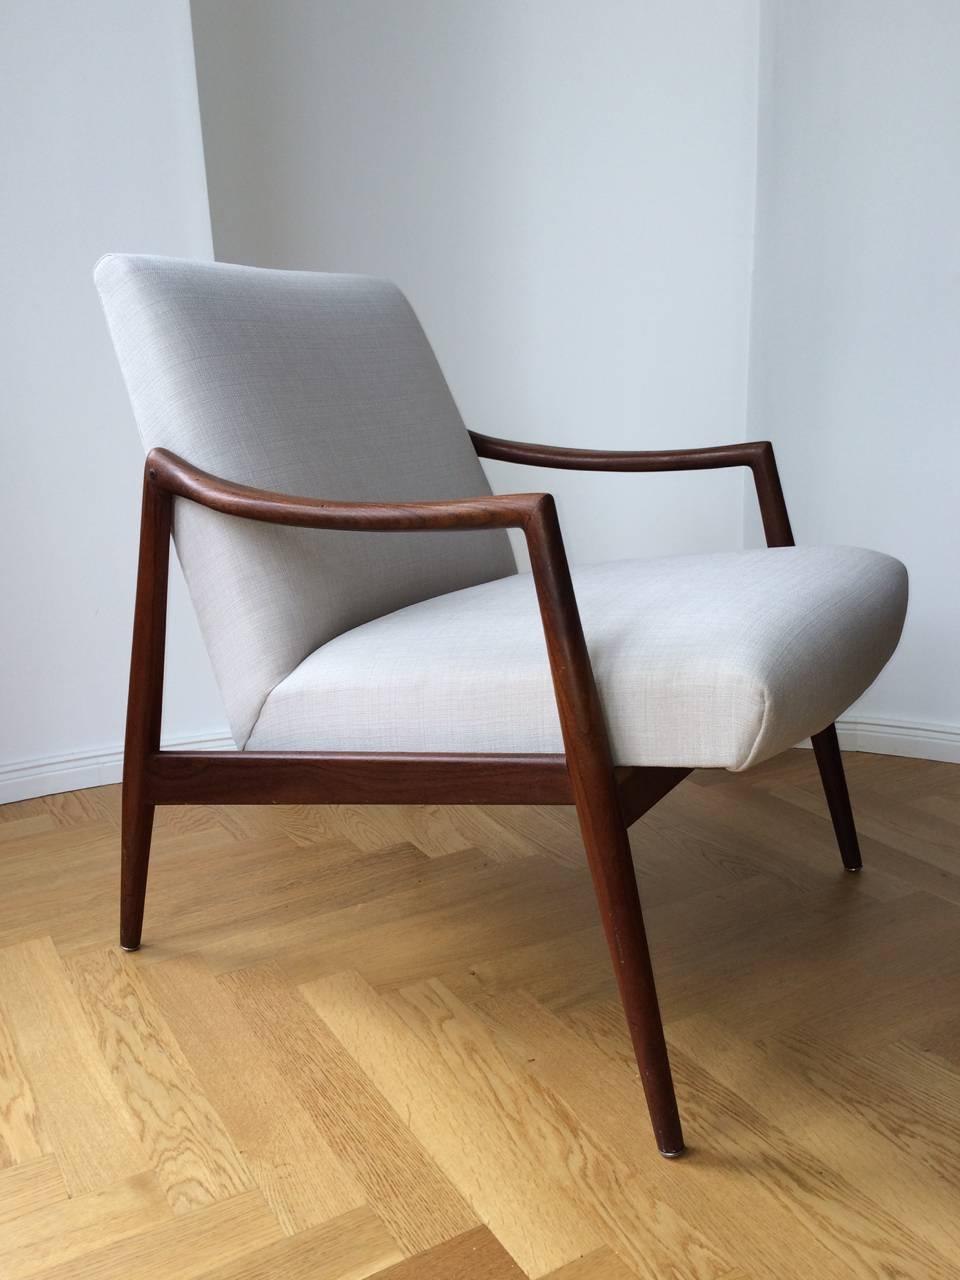 German Mid-Century Teak Easy Chair by Hartmut Lohmeyer for Wilkhahn New Upholstery 1960 For Sale